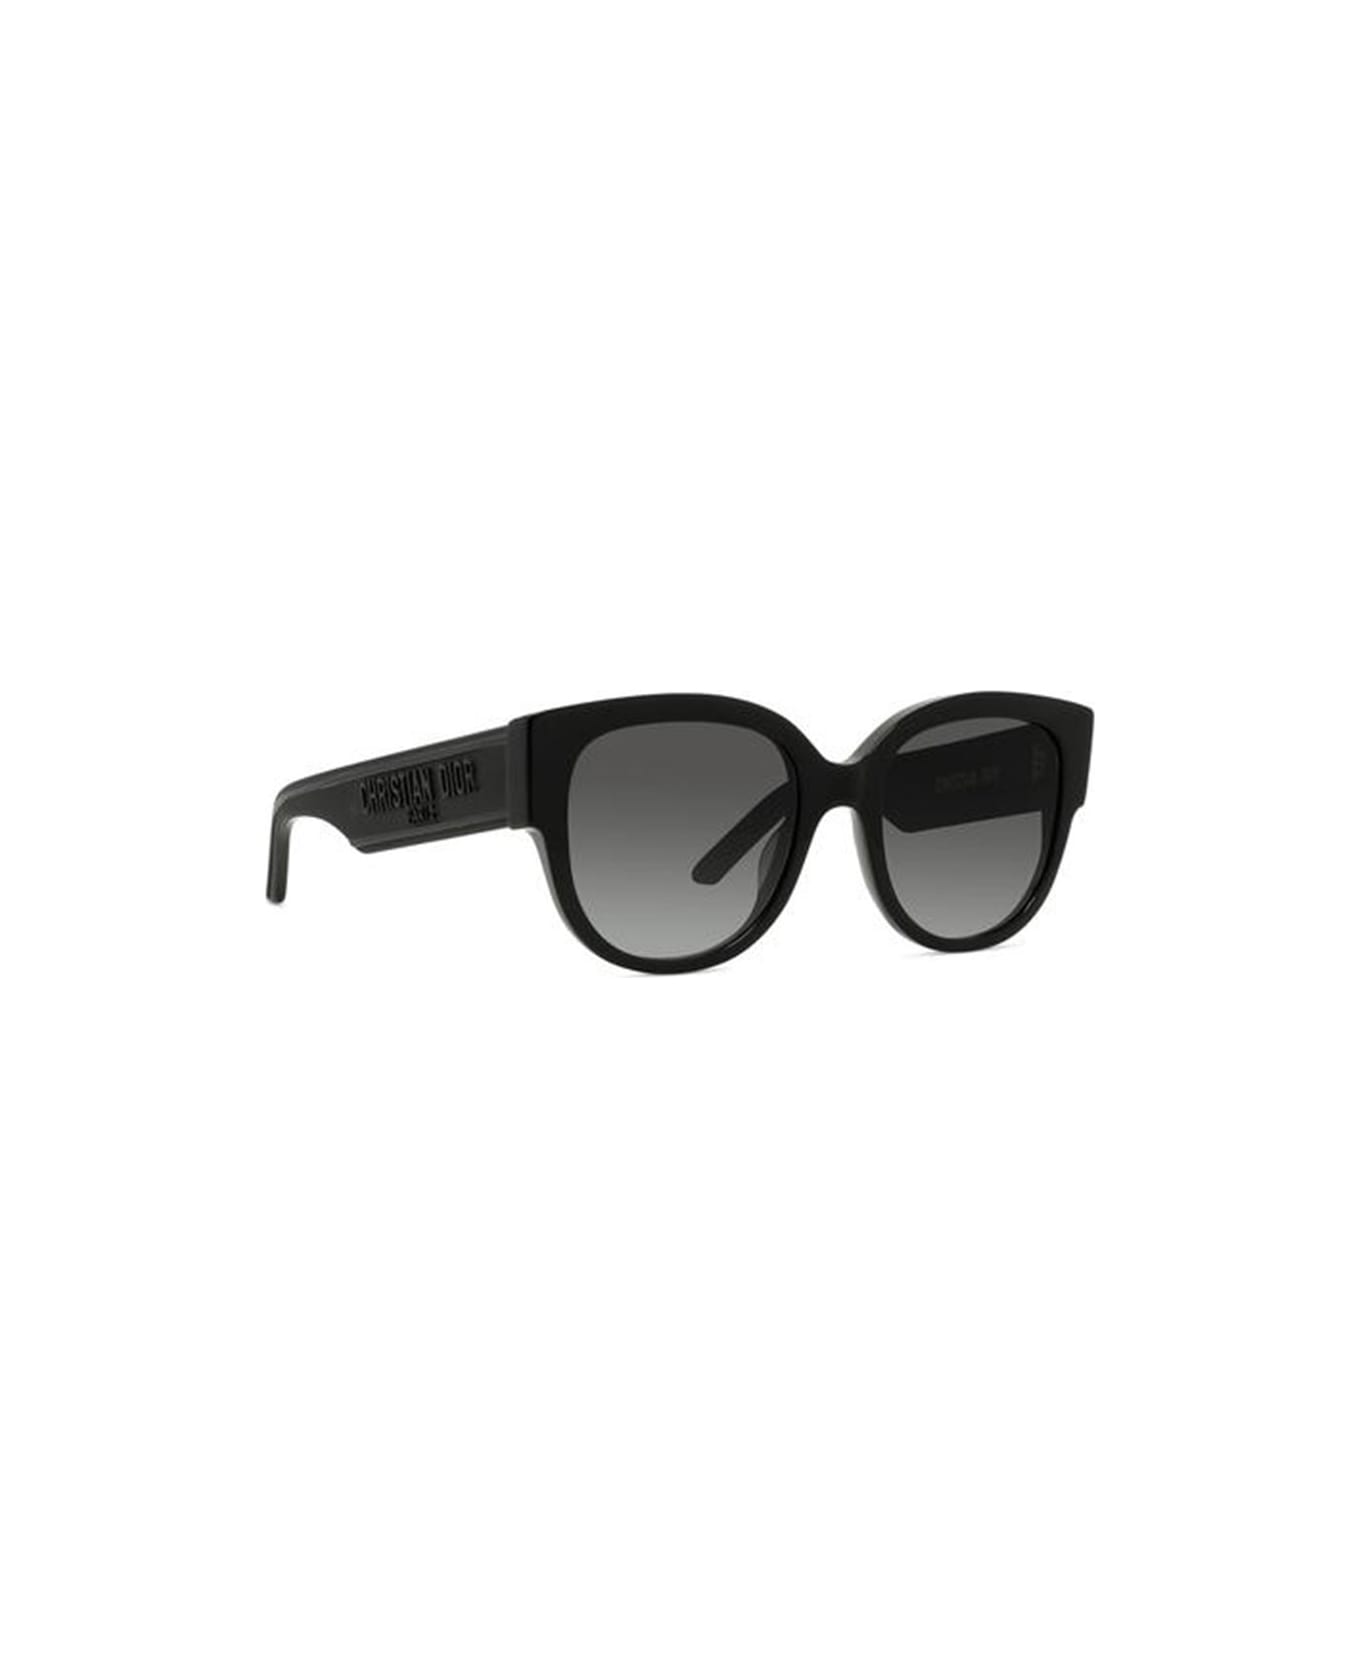 Dior Eyewear Sunglasses - Nero/Grigio sfumato サングラス